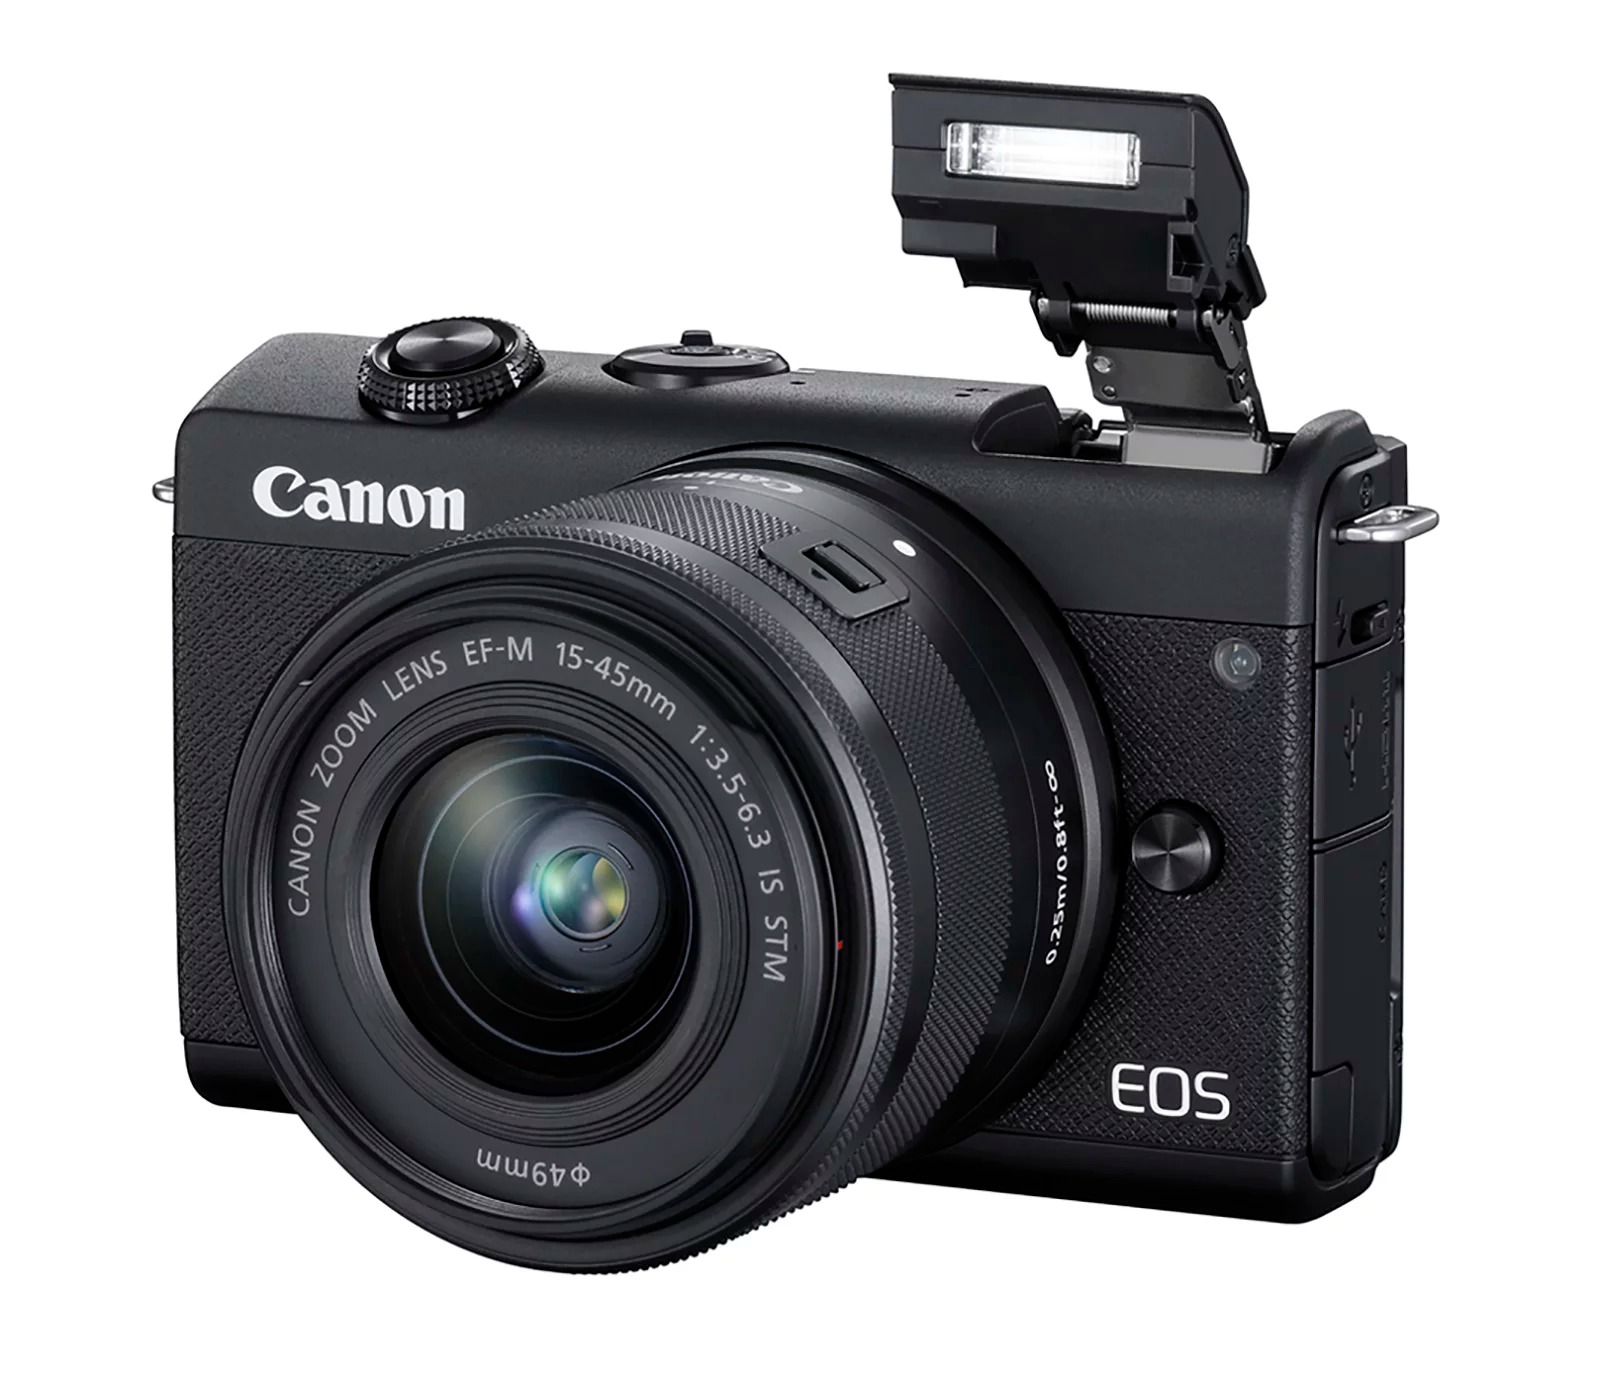 Canon ra mắt máy ảnh
không gương lật EOS M200, với khả năng lấy nét nhận diện mắt
và quay video 4K.